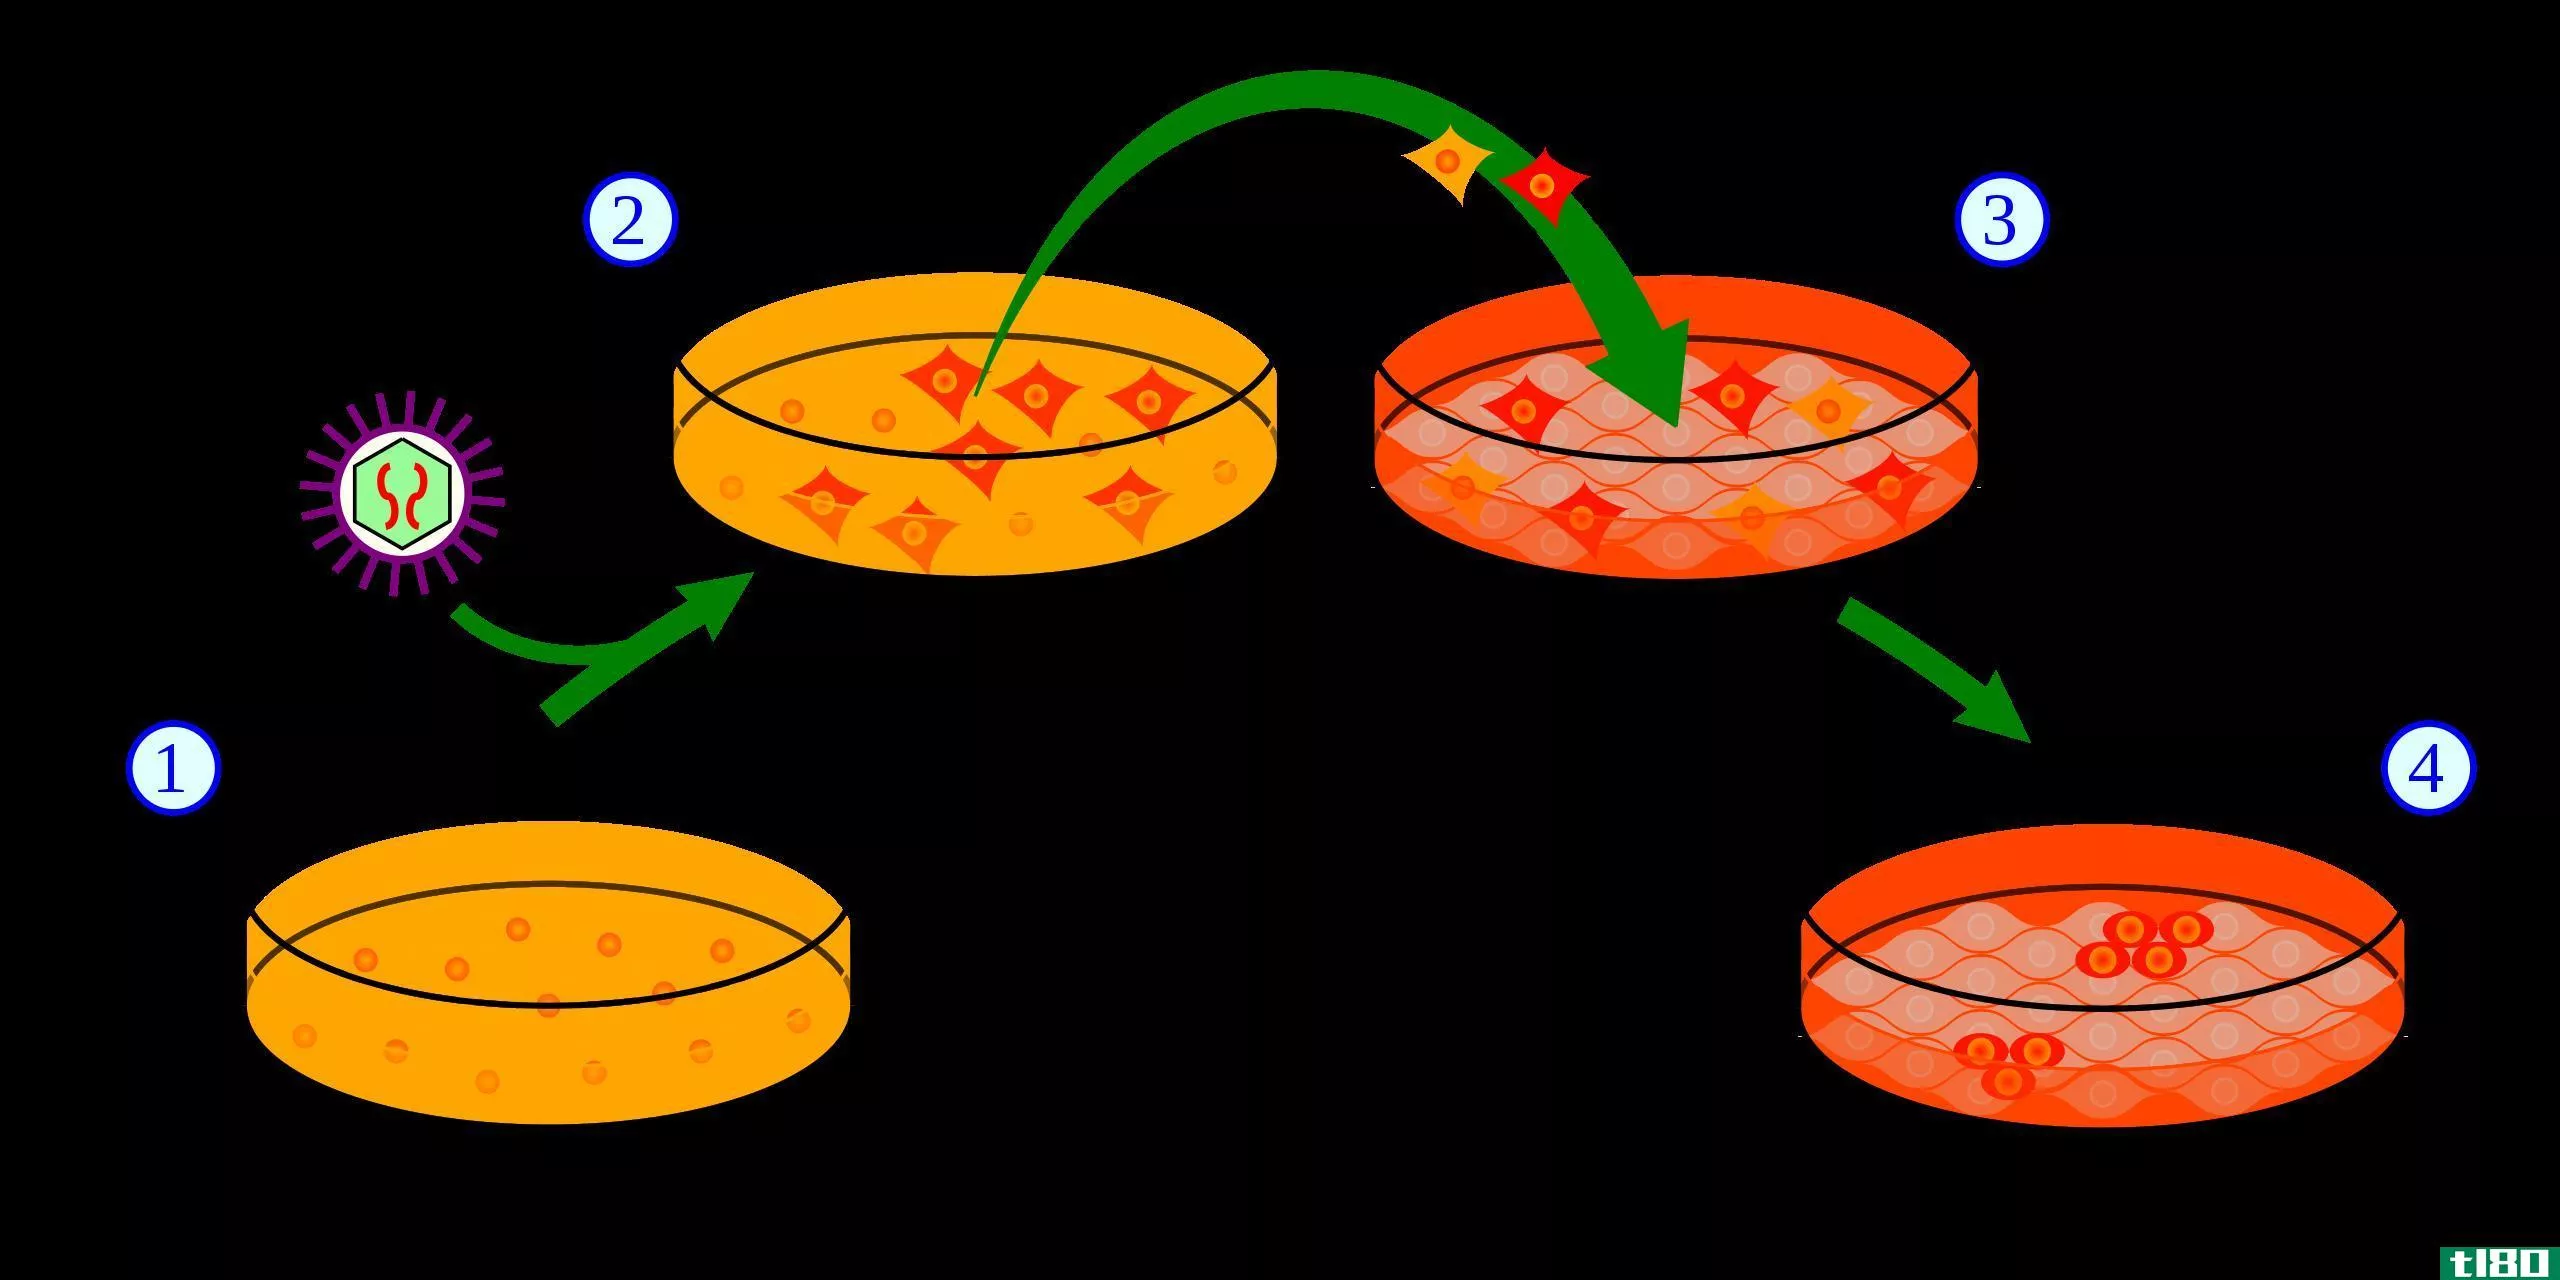 多能性(pluripotent)和多能干细胞(multipotent stem cell)的区别